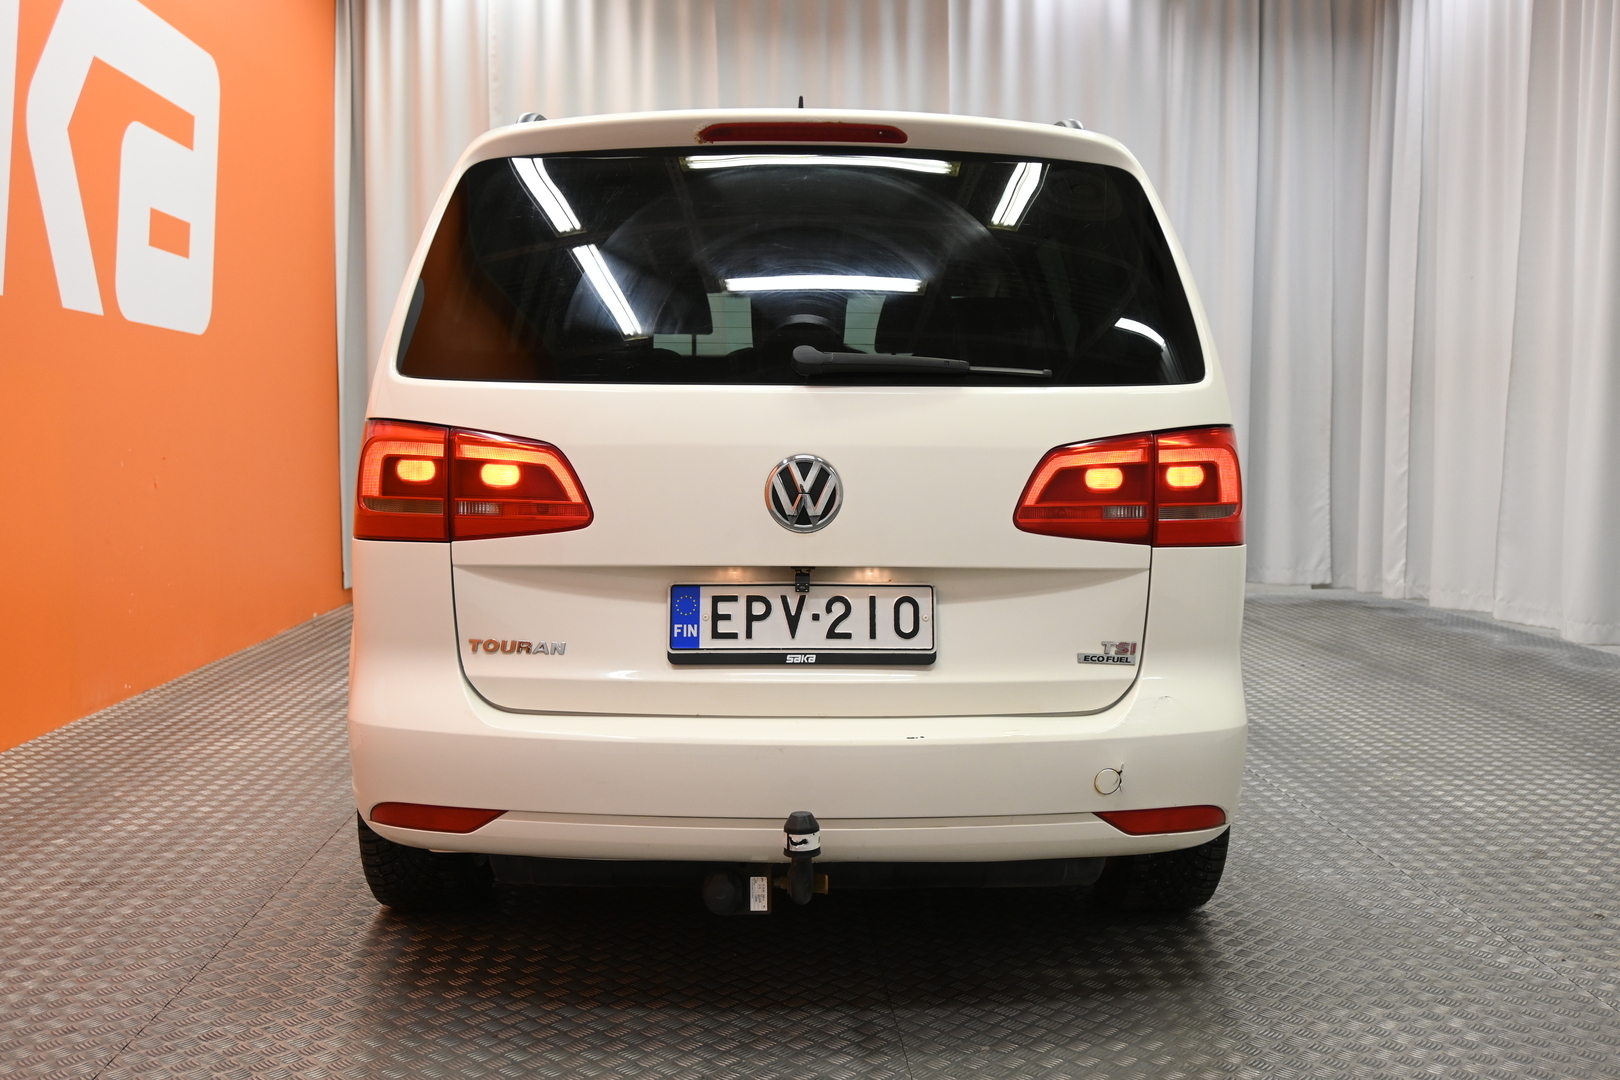 Valkoinen Tila-auto, Volkswagen Touran – EPV-210